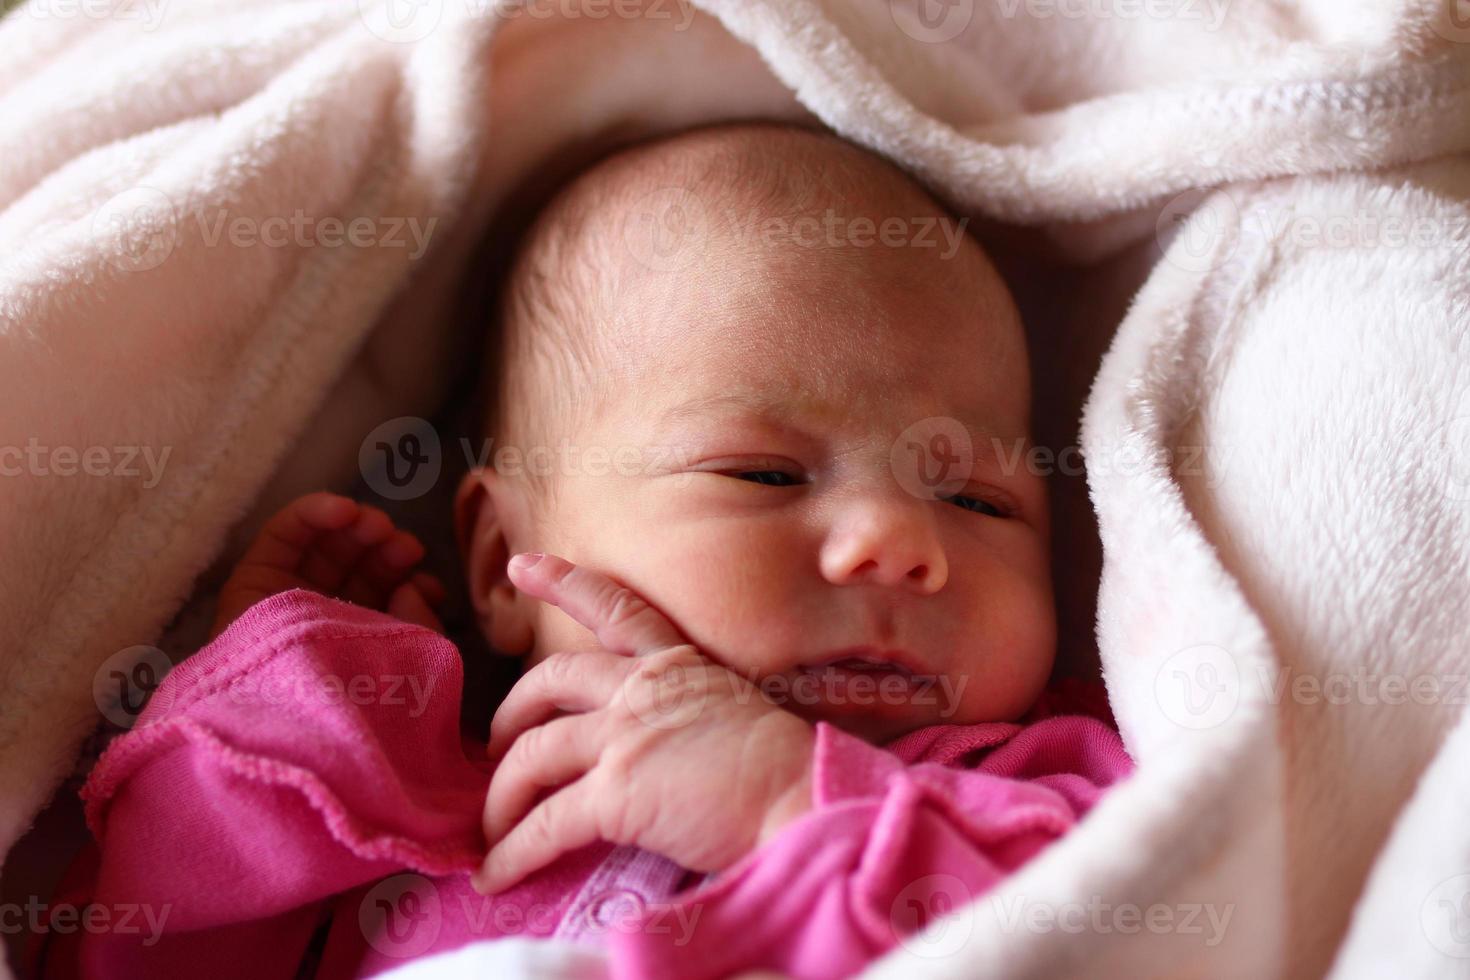 süßes schlafendes neugeborenes baby in rosa baud auf ihrem bett unter beiger decke. foto